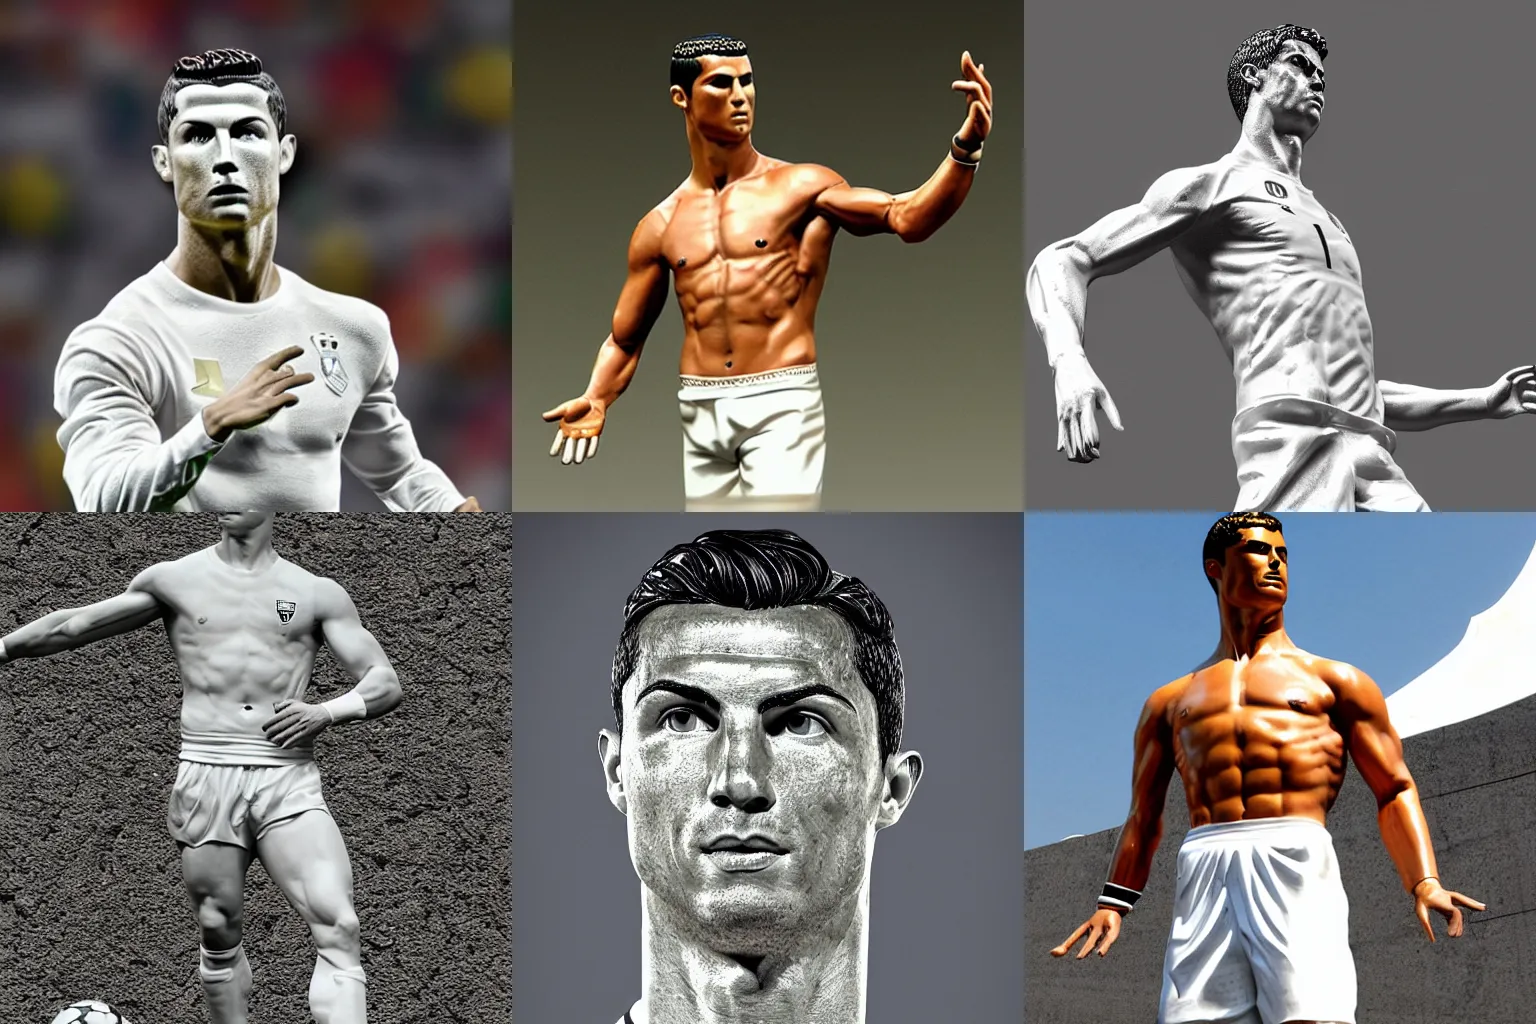 Prompt: Cristiano Ronaldo as a Greek statue